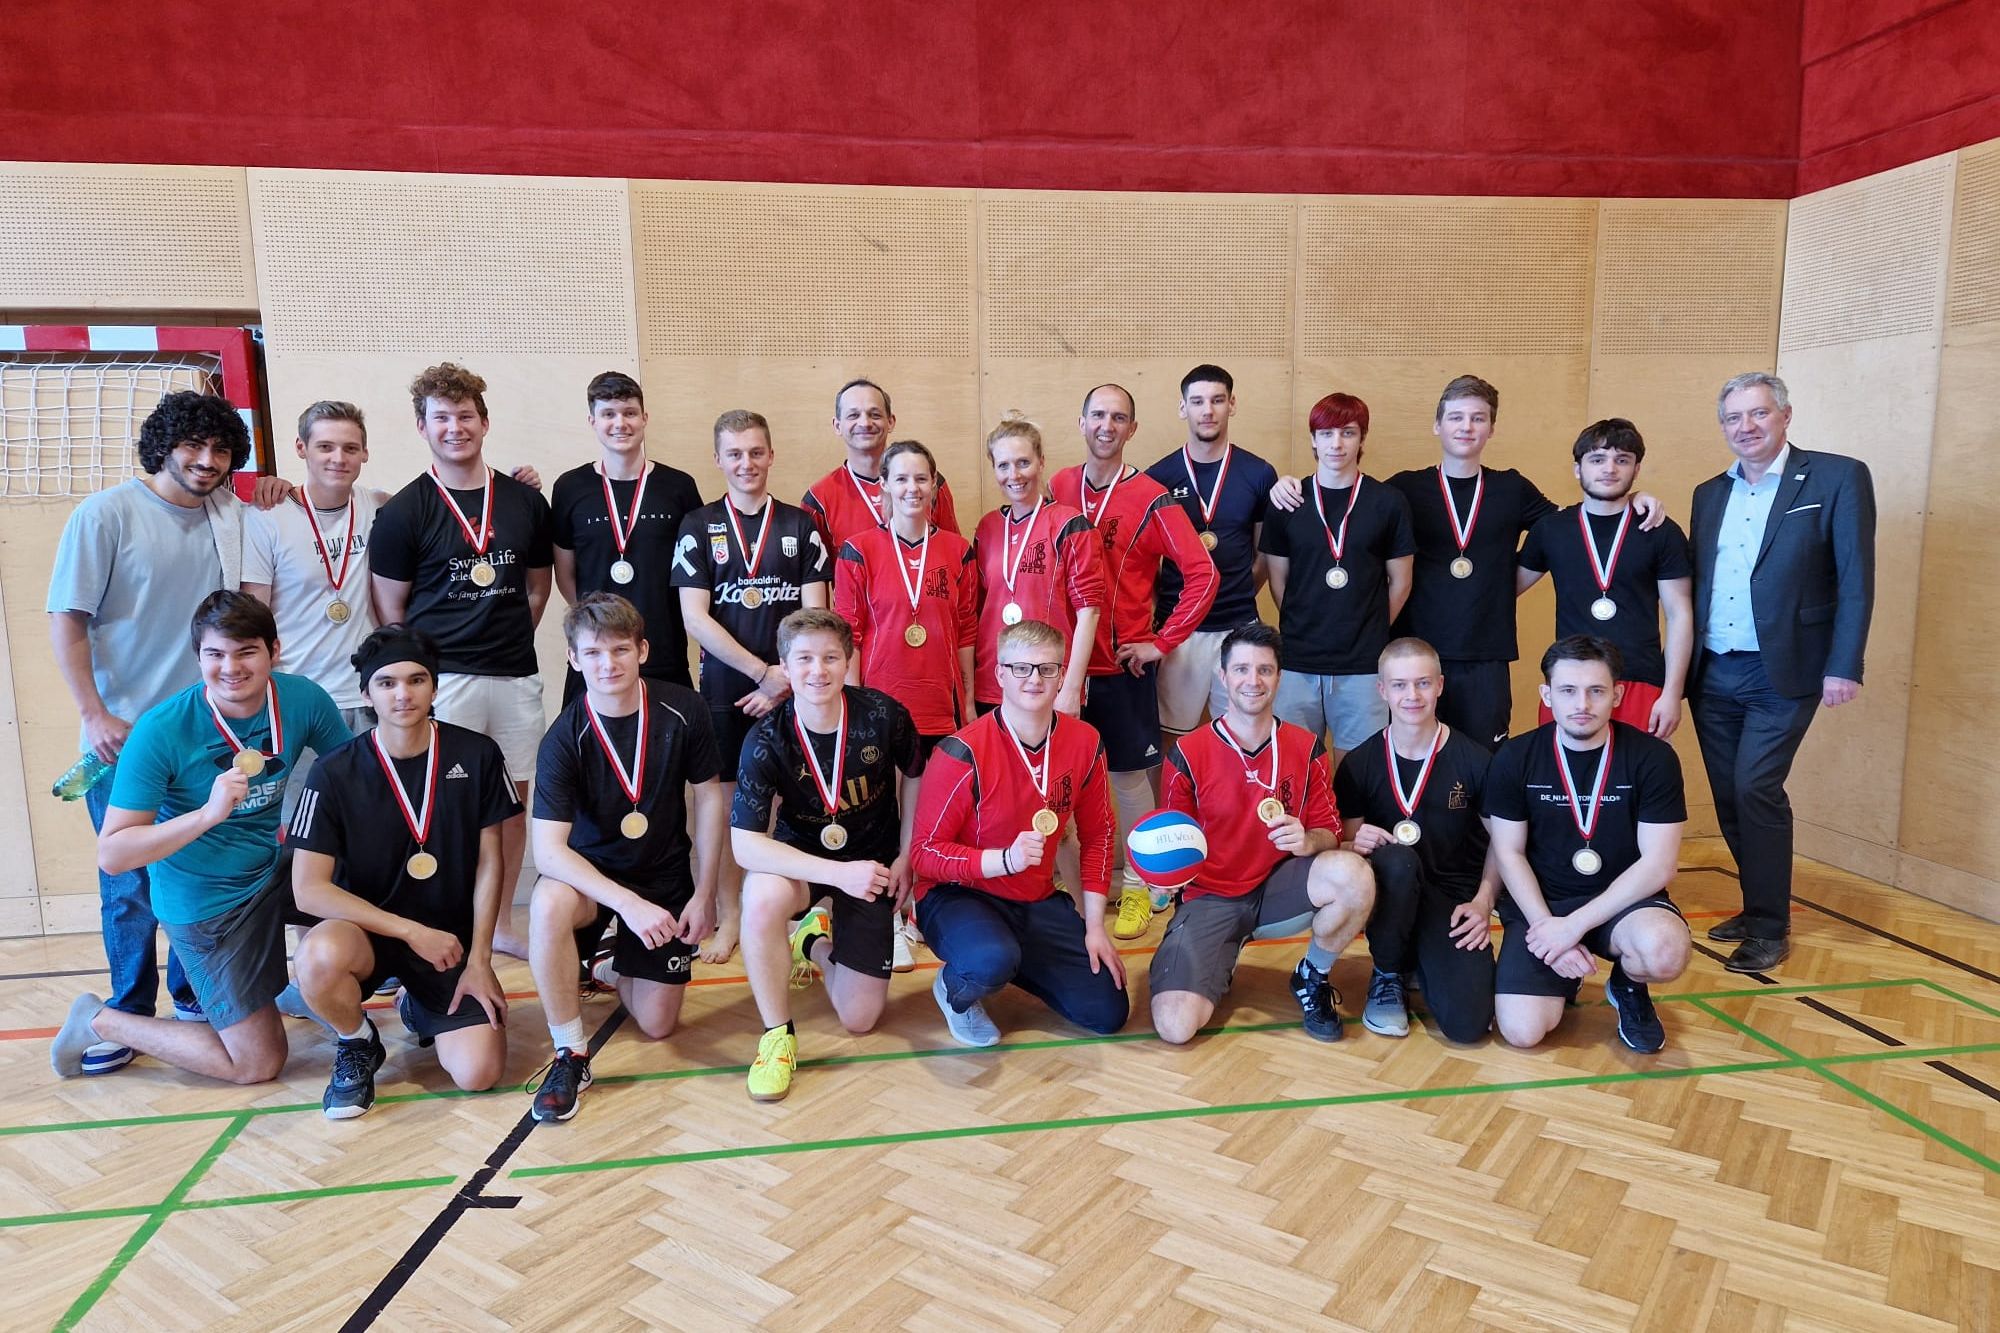 Sportliche Höchstleistungen: HTL Wels begeistert mit Volleyballturnier